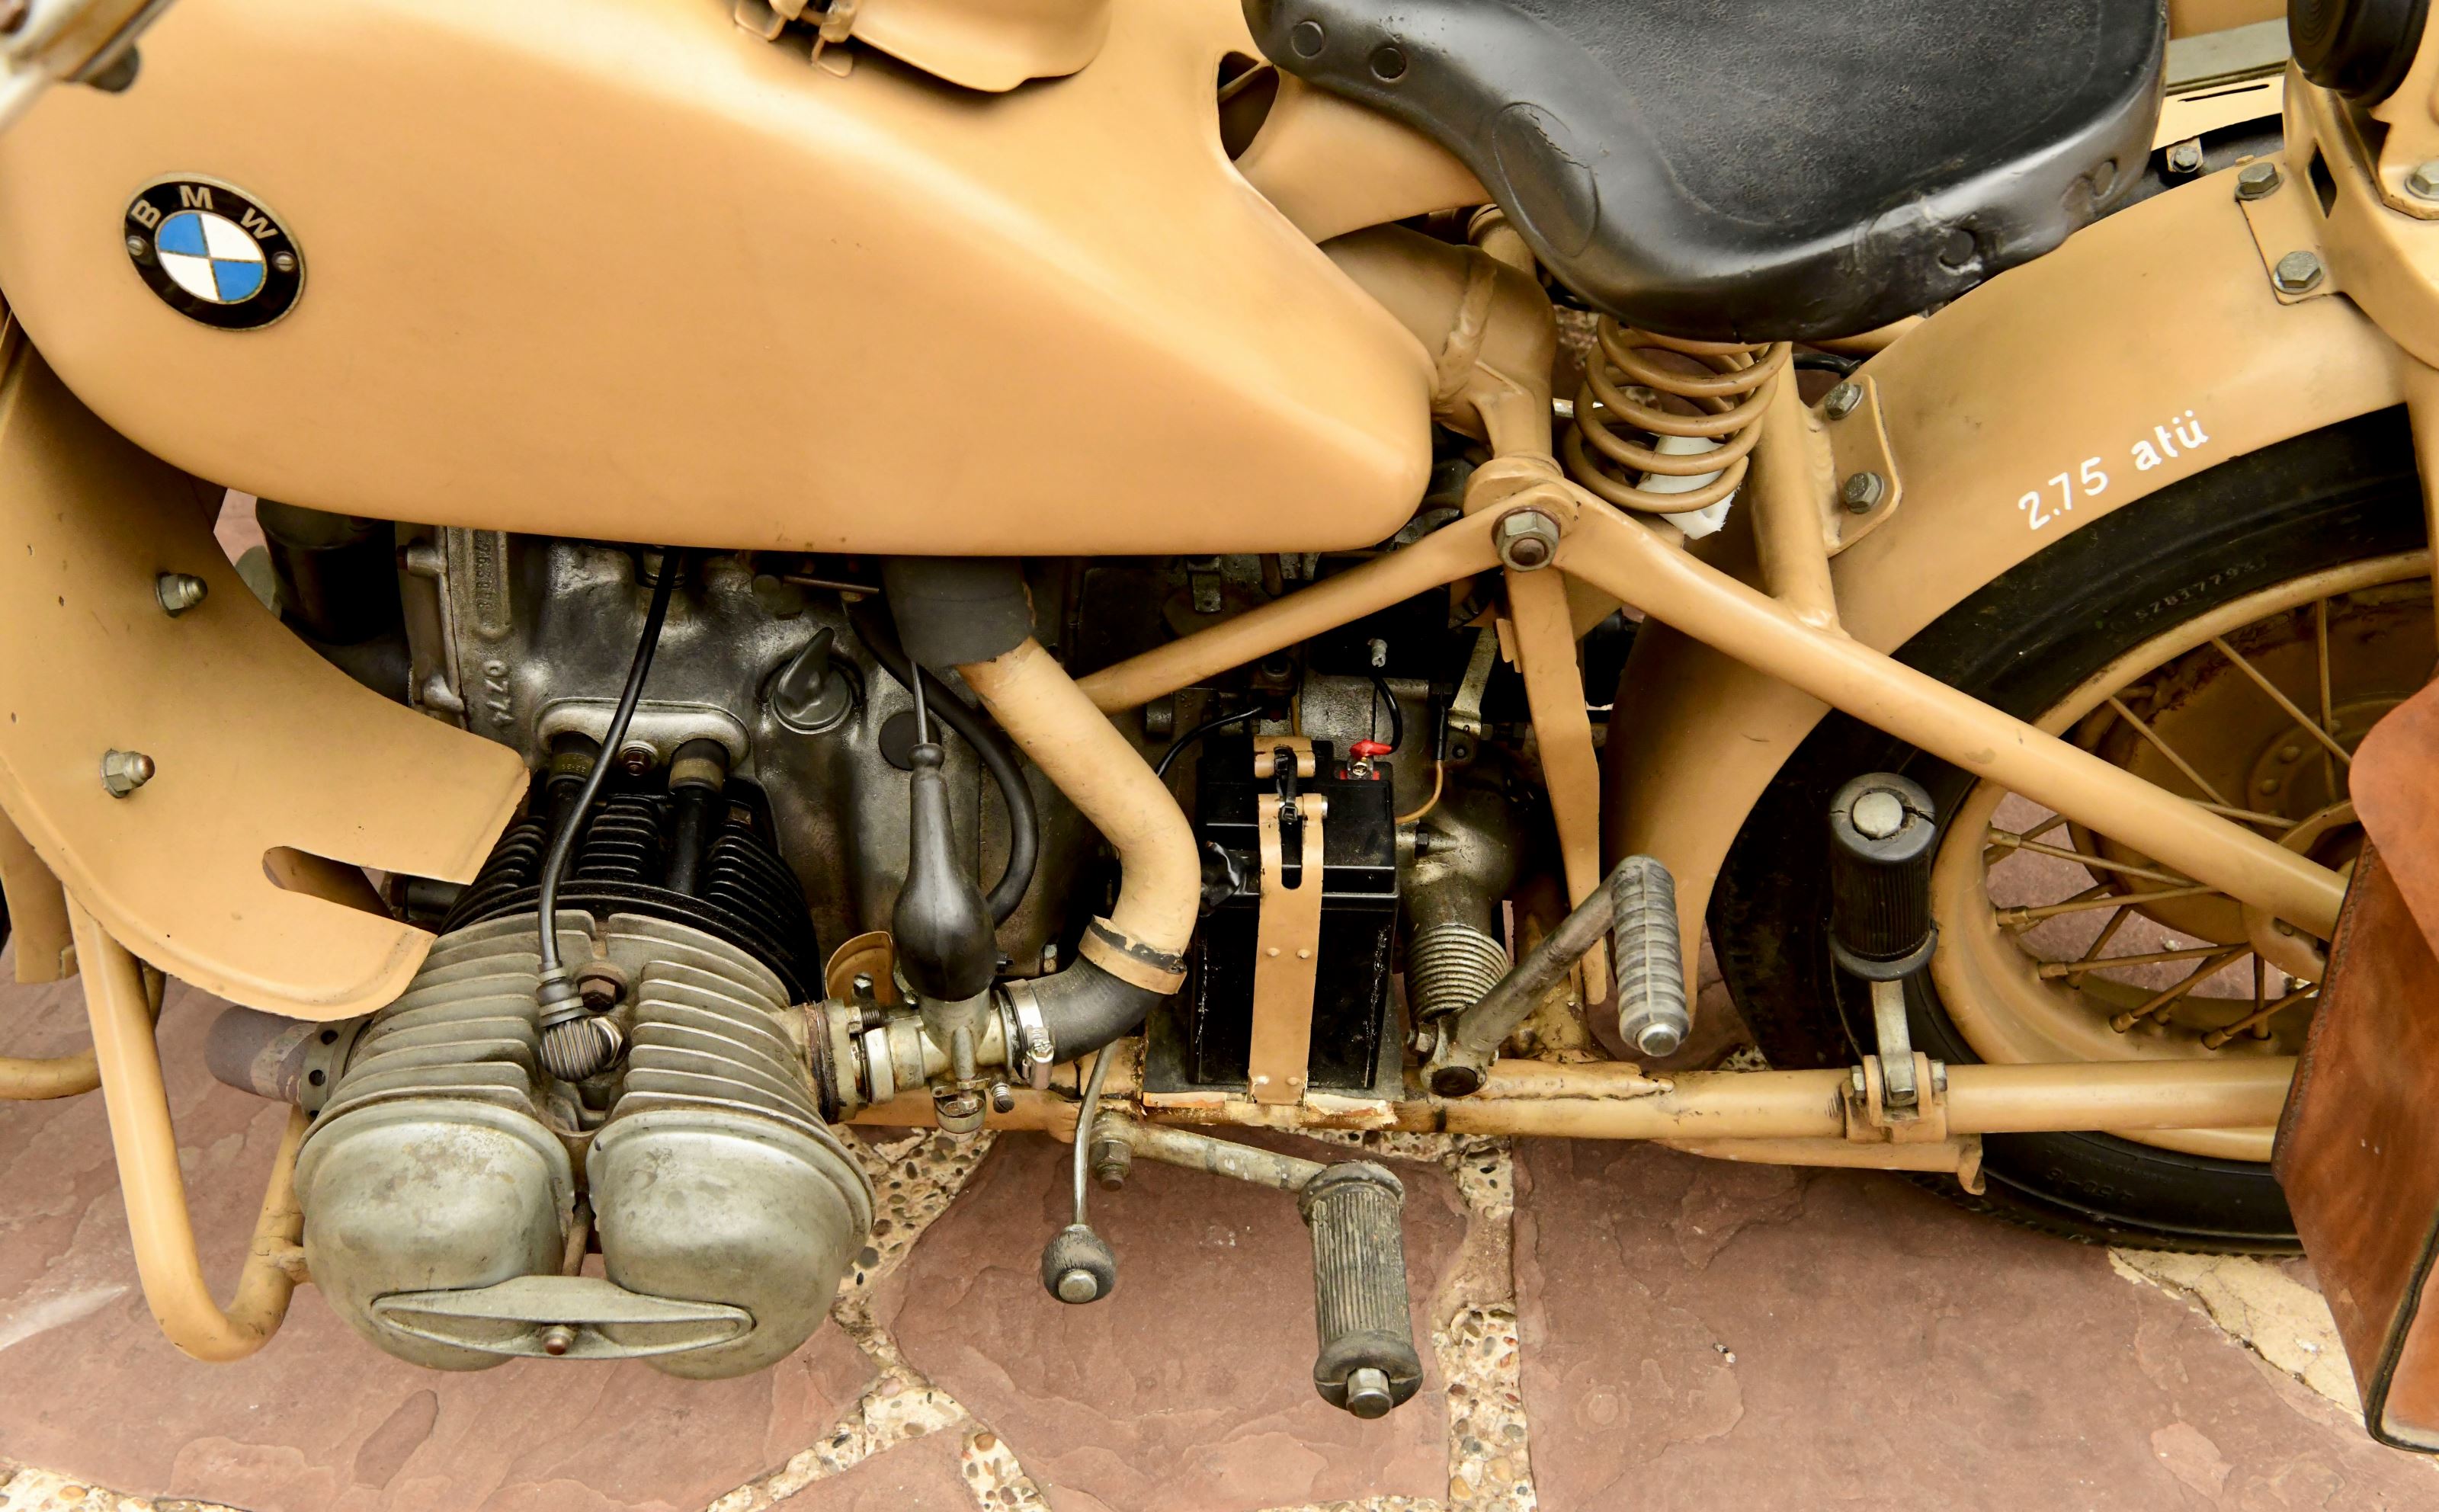 Bmw r75 750cc military motorcycle combination wehrmachtsgespann jjwg5lwqiaxyx4imm91xf